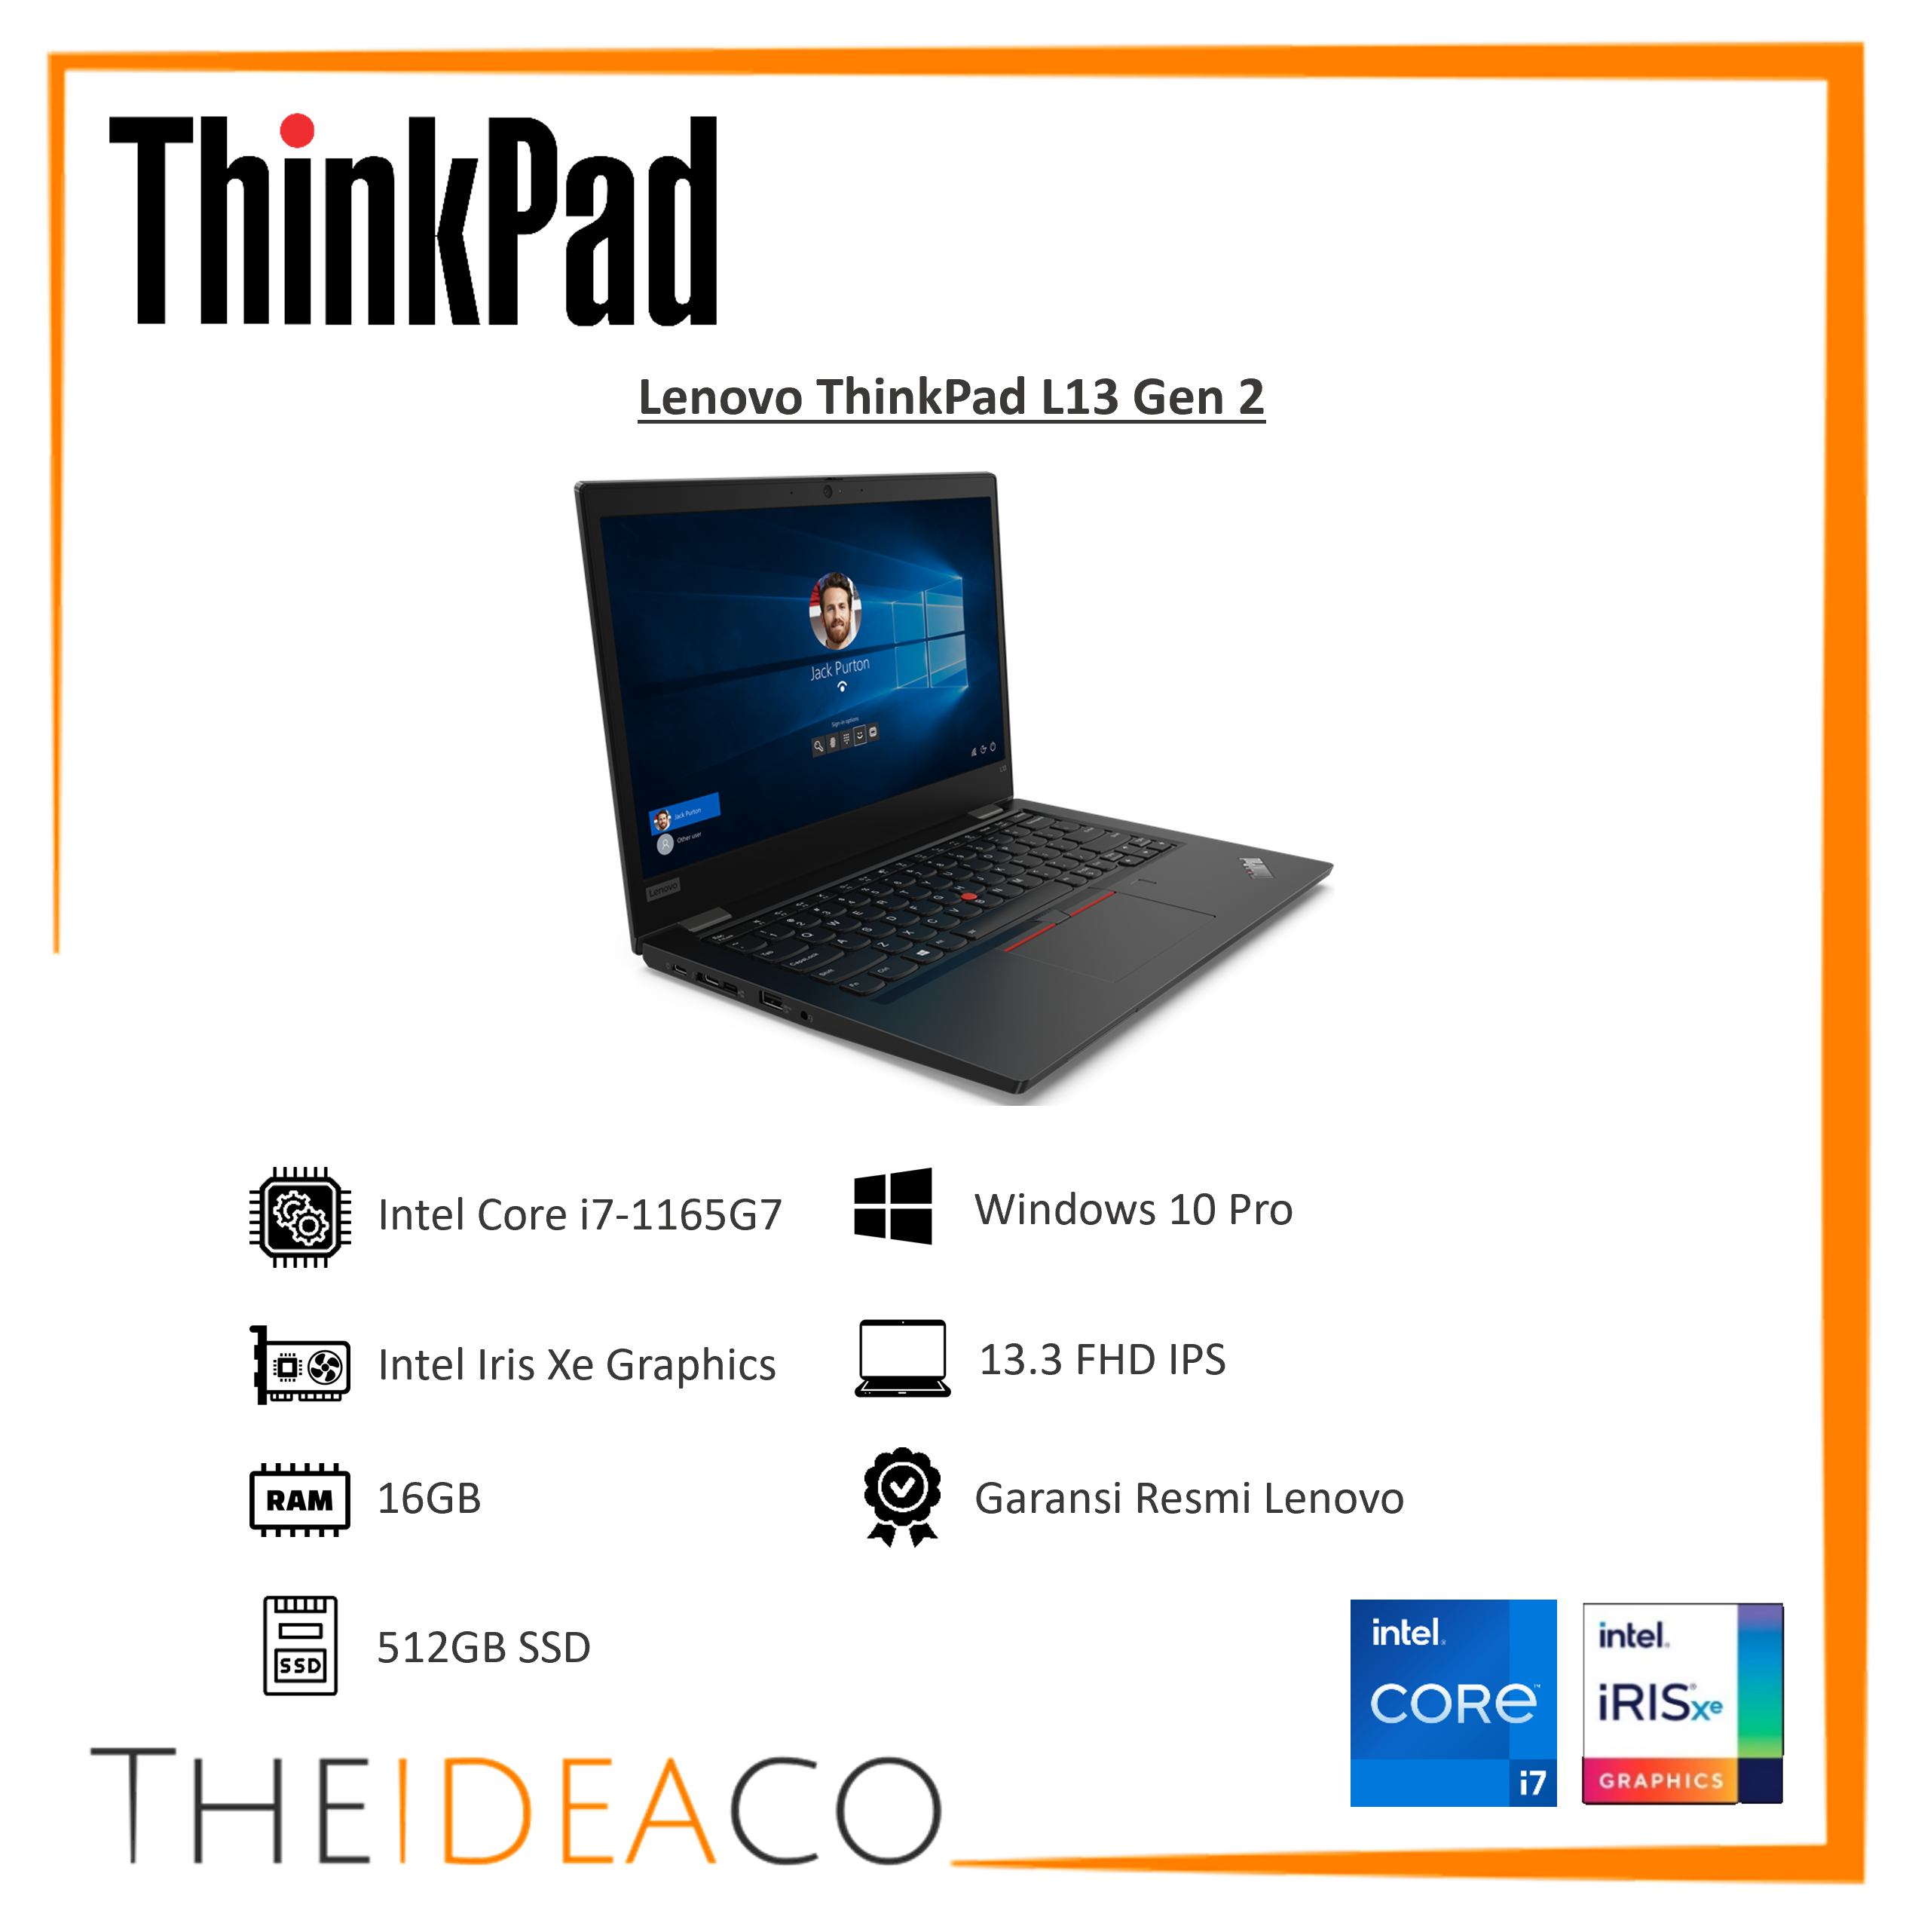 Jual Lenovo ThinkPad L13 Gen 2 i7-1165G7 16GB 512GB SSD Win10Pro